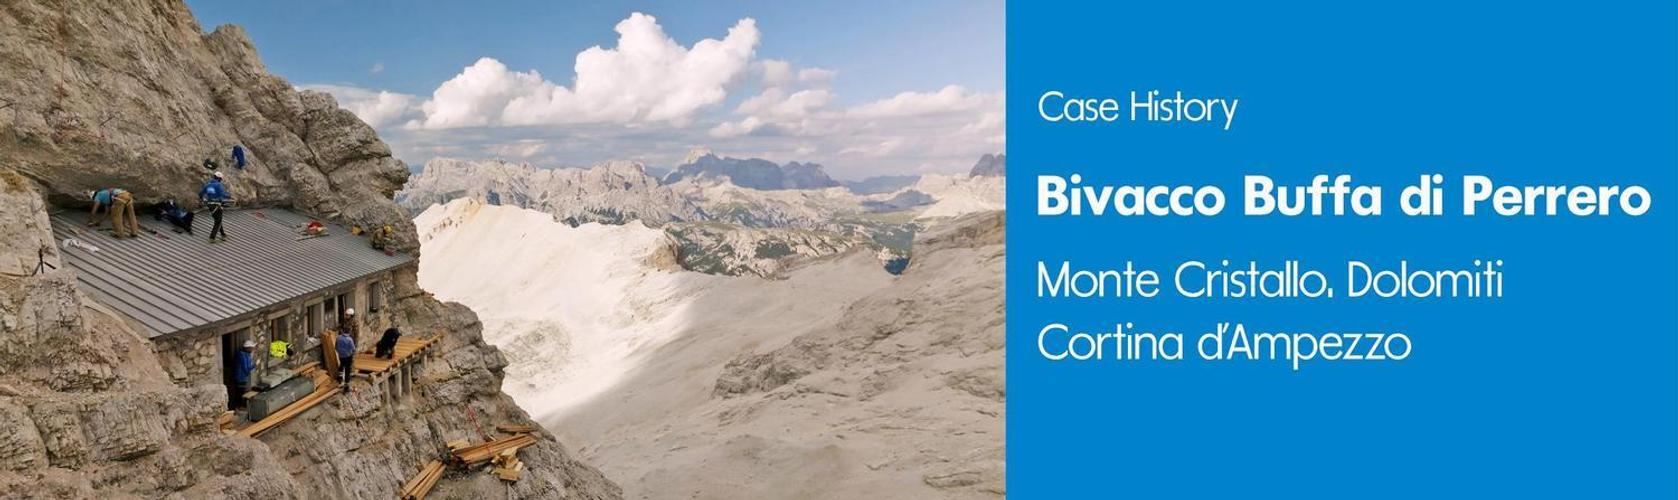 Bivouac Buffa di Perrero: Soprema materials protagonists of the mountaineering enterprise in the Dolomites